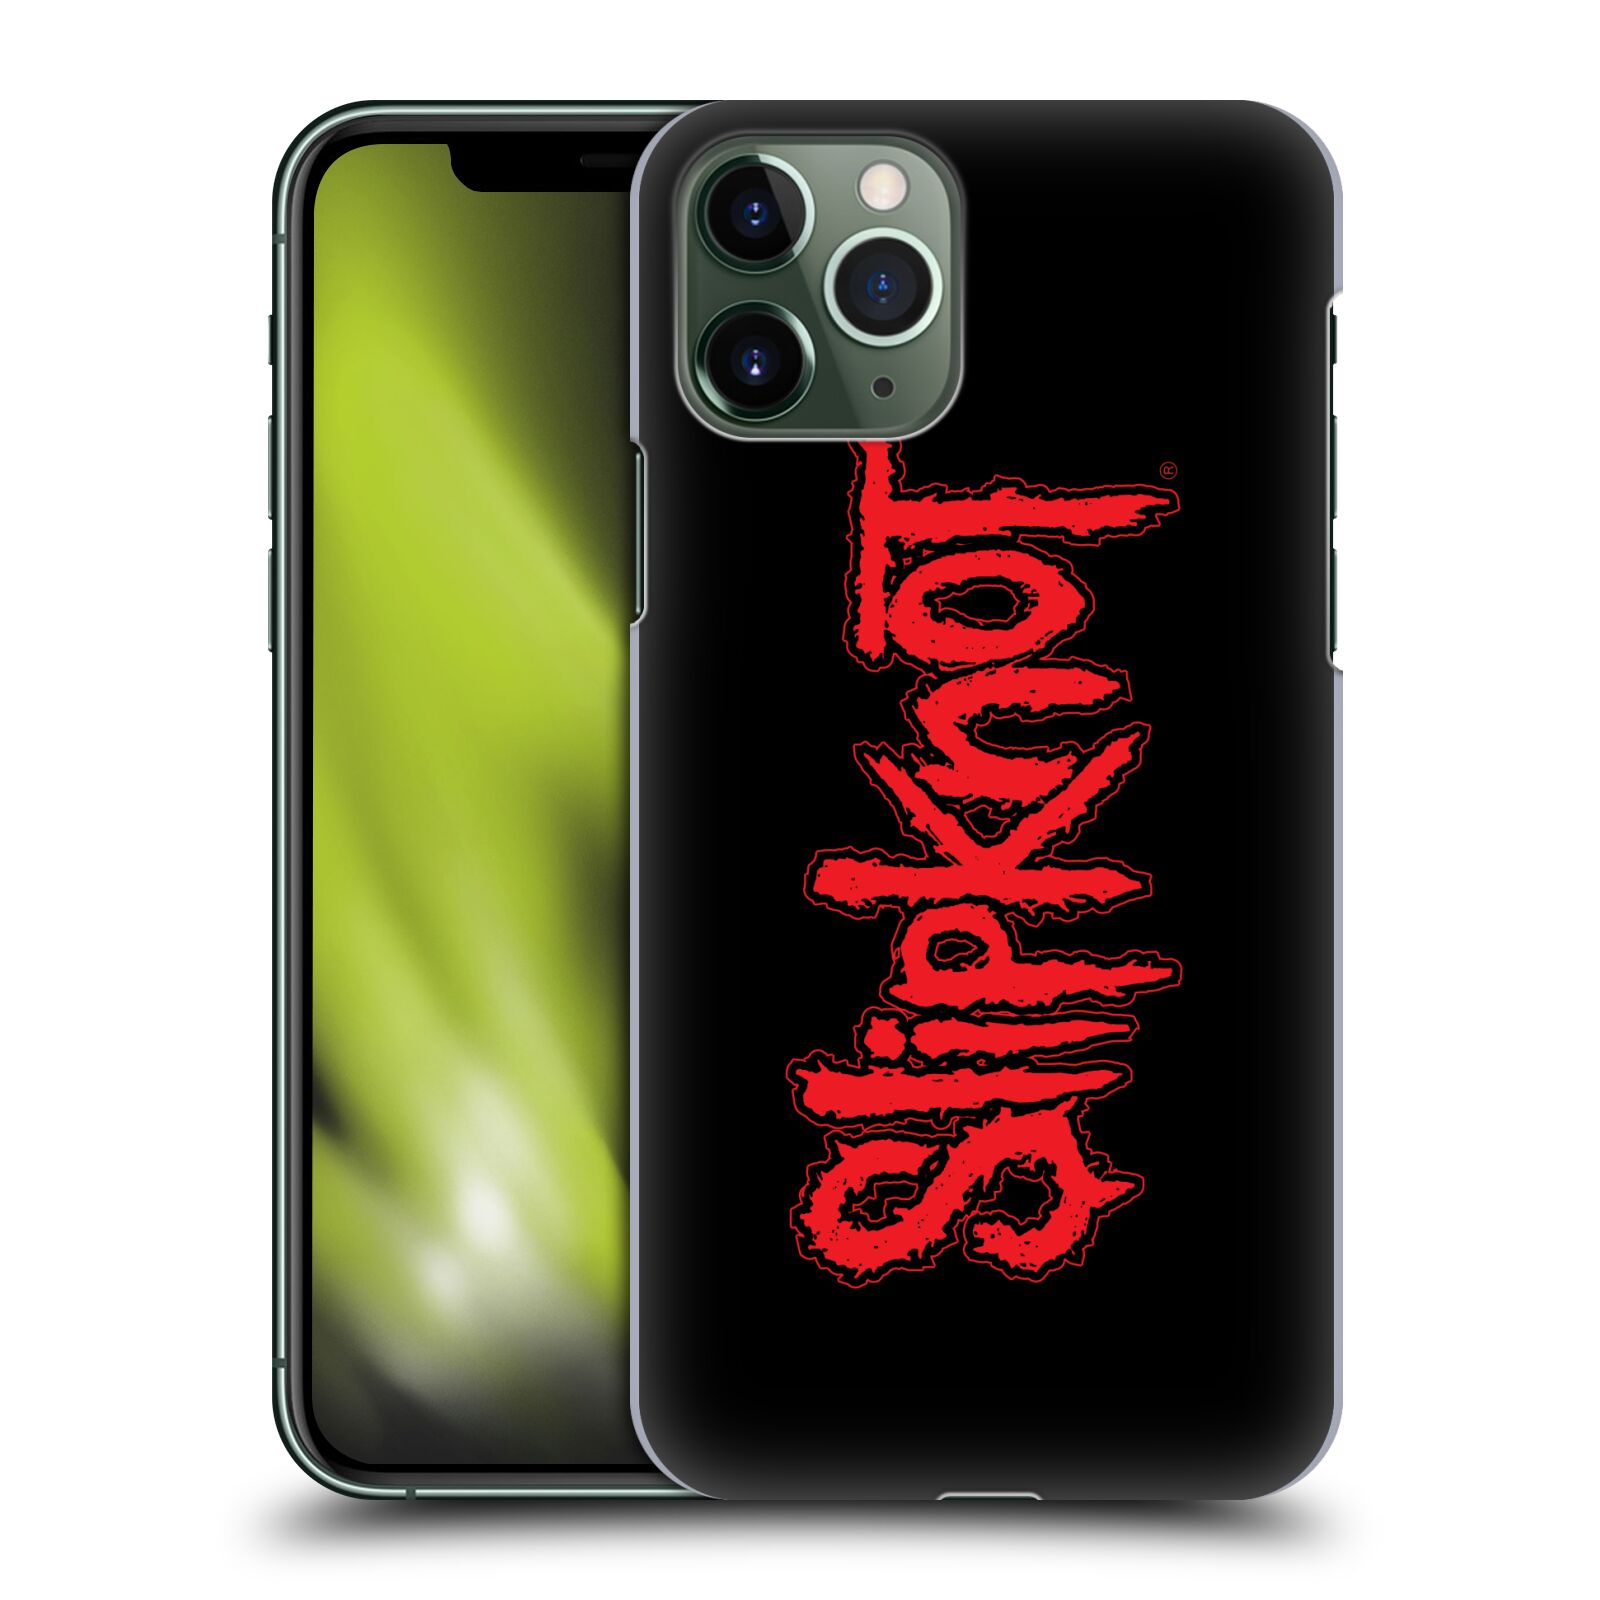 Pouzdro na mobil Apple Iphone 11 PRO - HEAD CASE - hudební skupina Slipknot logo velké